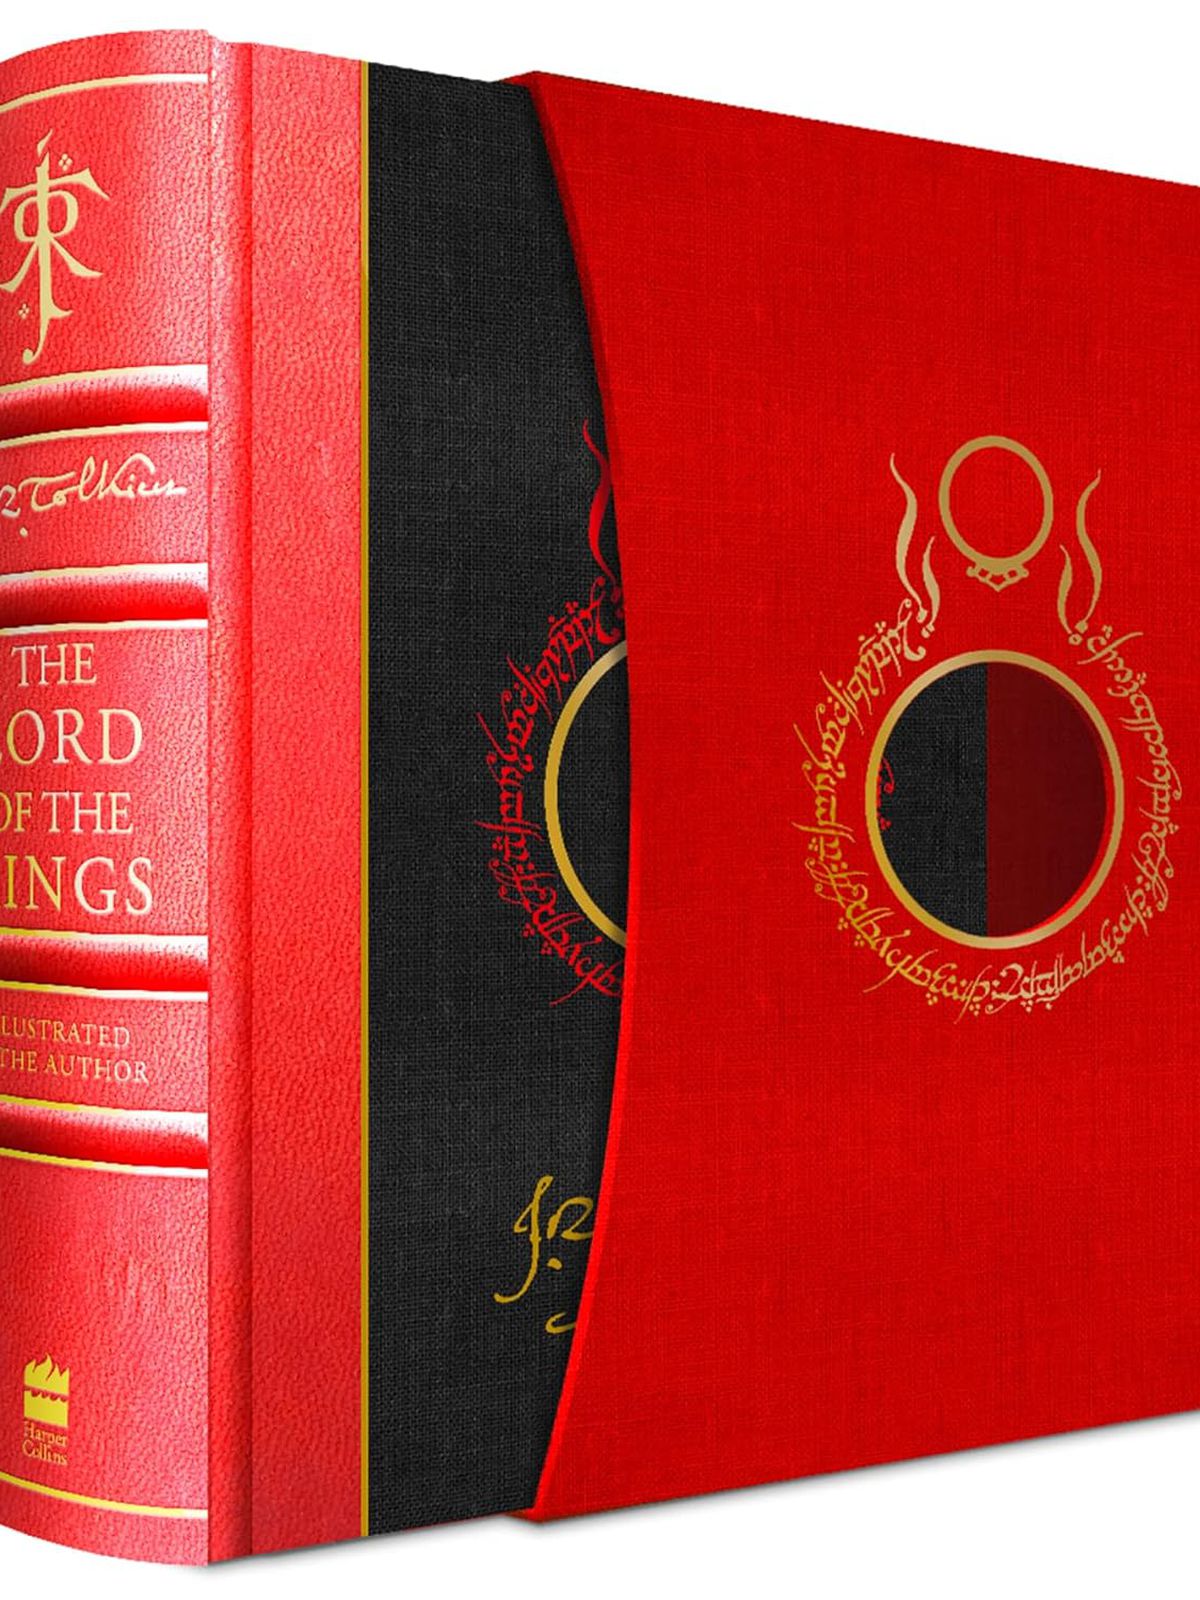 En bild av Sagan om ringen: Special Edition, där den röda och svarta boken glider halvvägs ur sin röda låda.